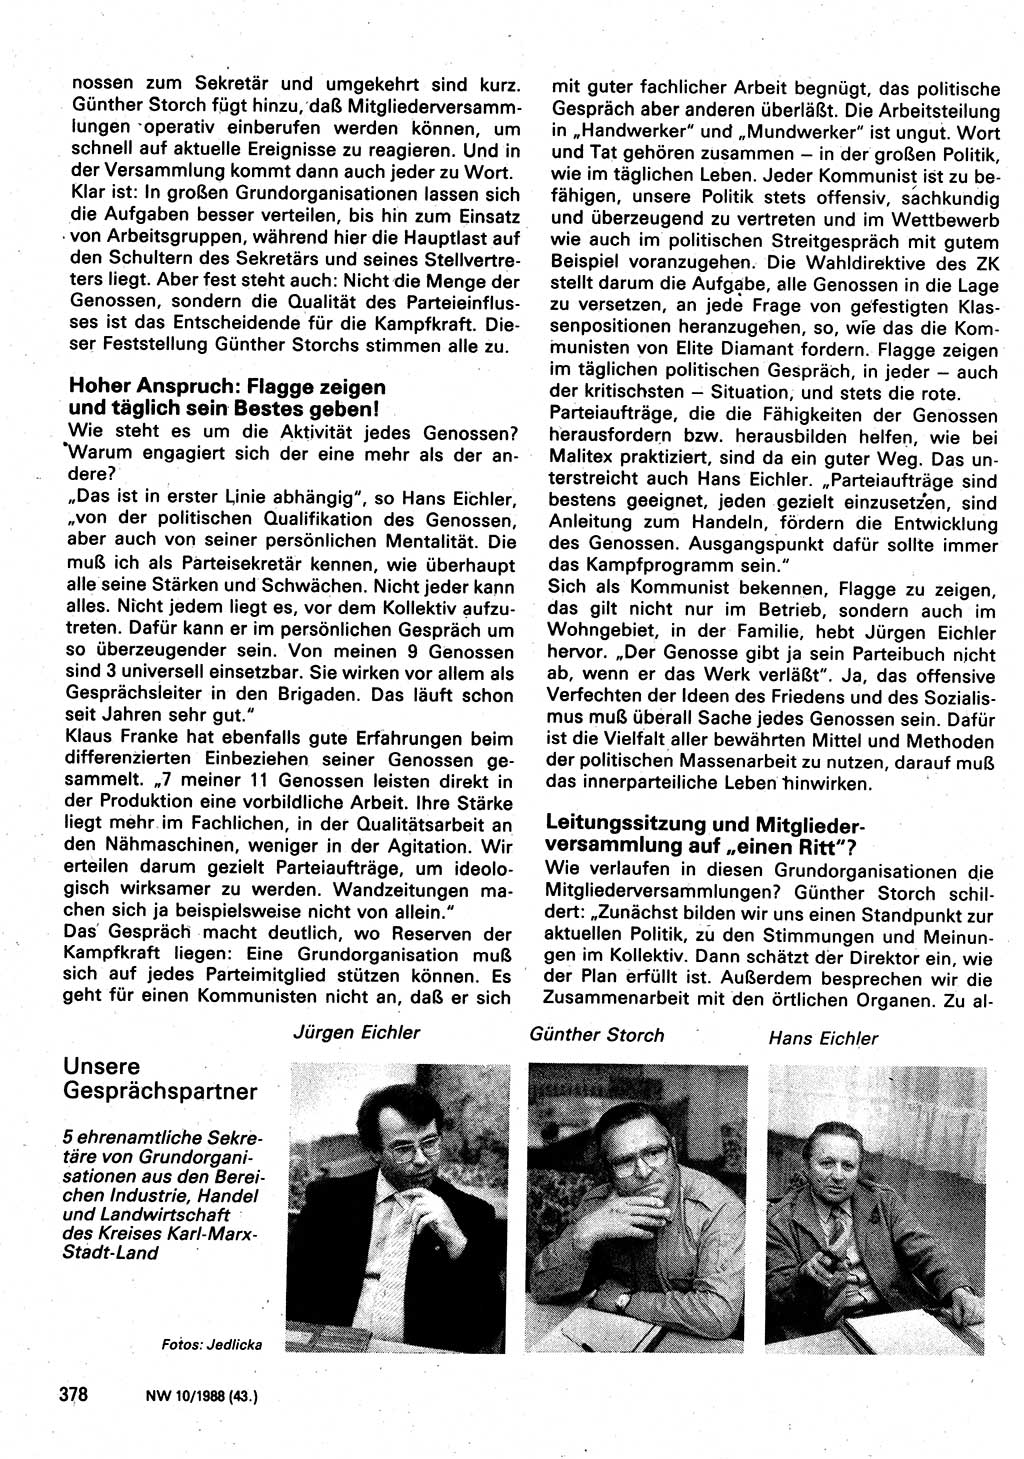 Neuer Weg (NW), Organ des Zentralkomitees (ZK) der SED (Sozialistische Einheitspartei Deutschlands) für Fragen des Parteilebens, 43. Jahrgang [Deutsche Demokratische Republik (DDR)] 1988, Seite 378 (NW ZK SED DDR 1988, S. 378)